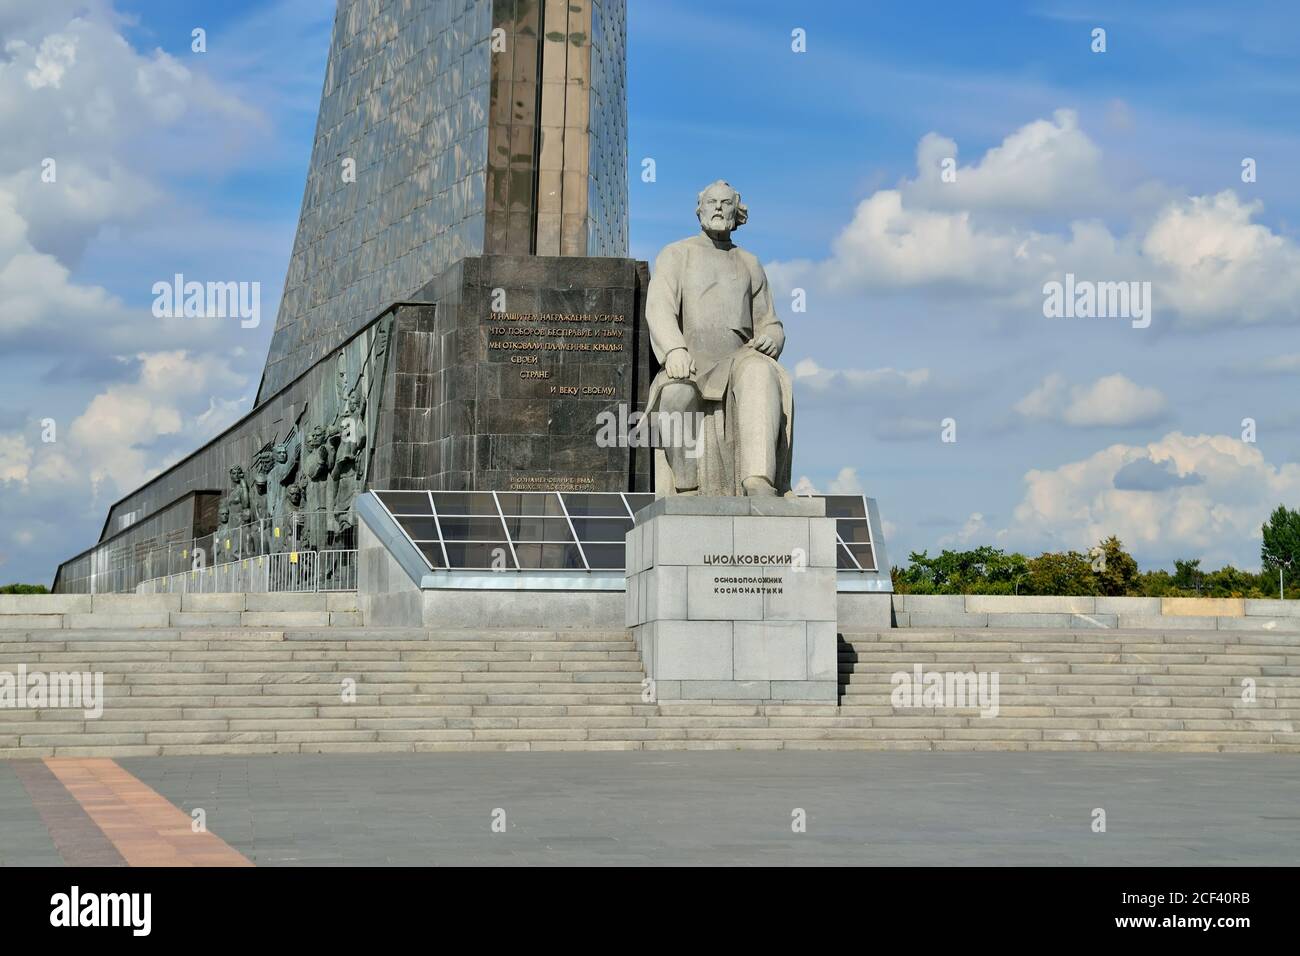 Mosca, Russia - 25 agosto 2020: Monumento a Konstantin Eduardovich Tsiolkovsky, il fondatore della cosmonautica nel Museo Cosmonautico. Mosca, Russ Foto Stock